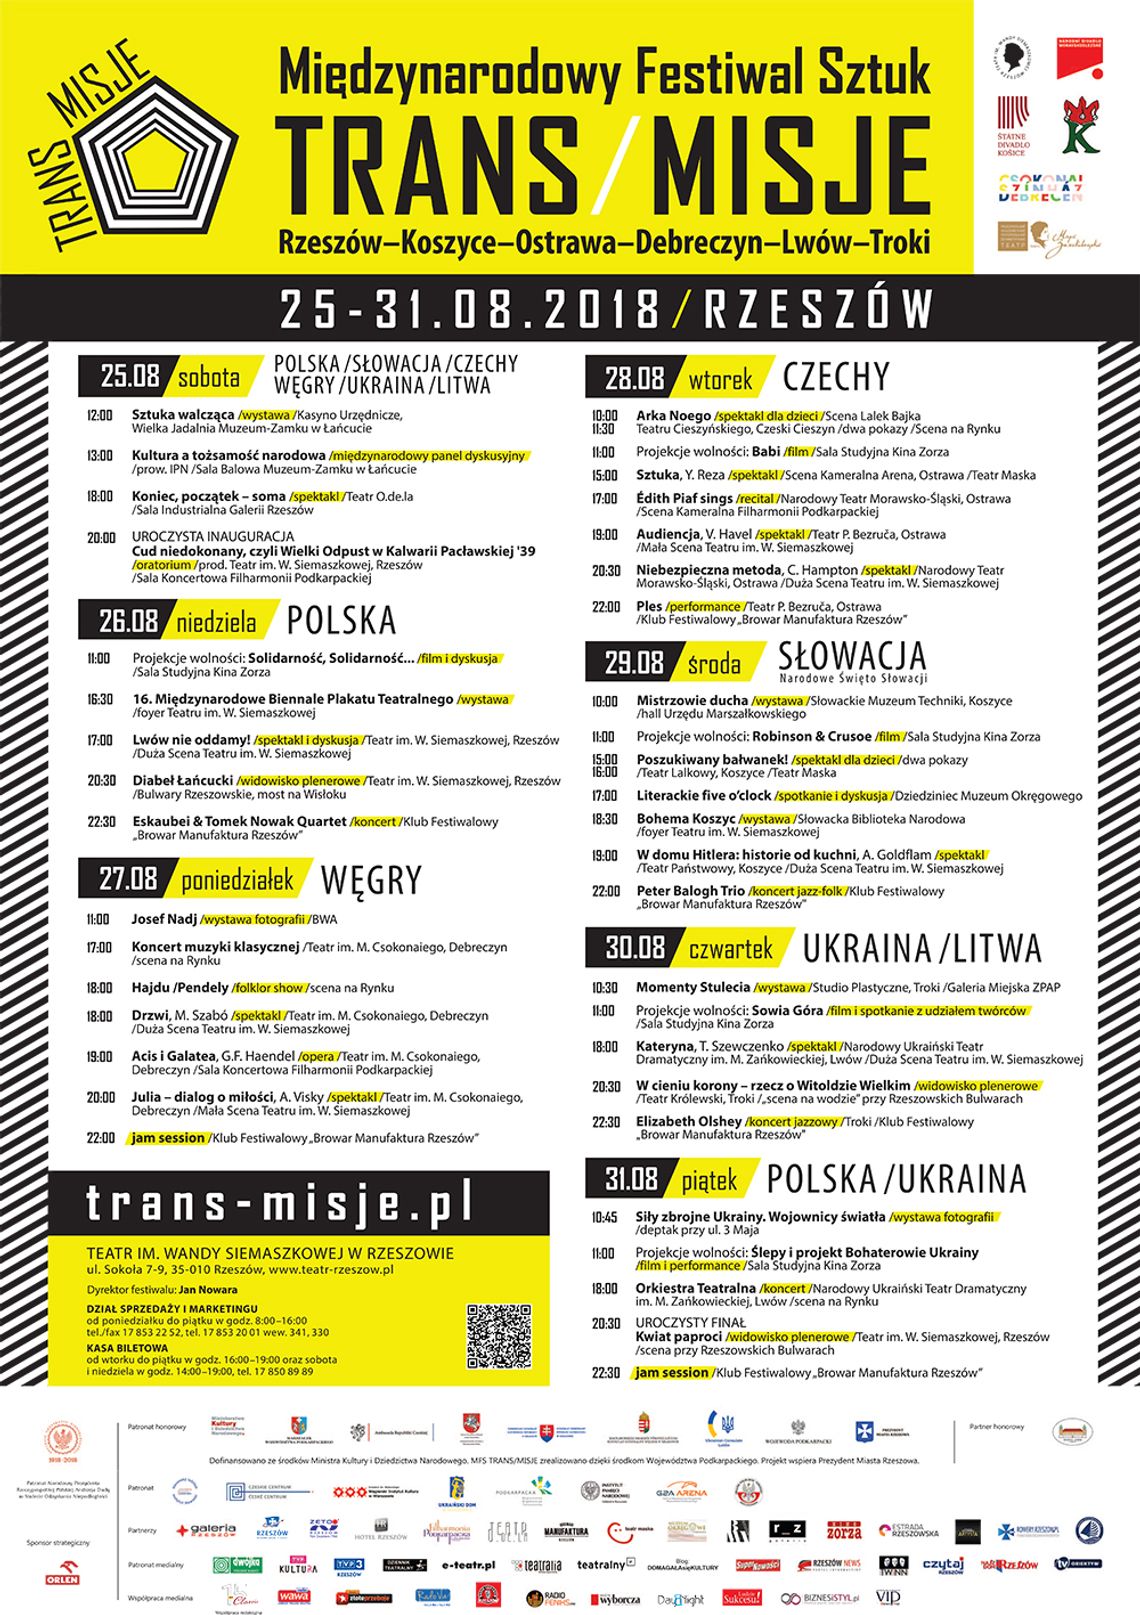 Miedzynarodowy Festiwal Sztuk TRANS/MISJE